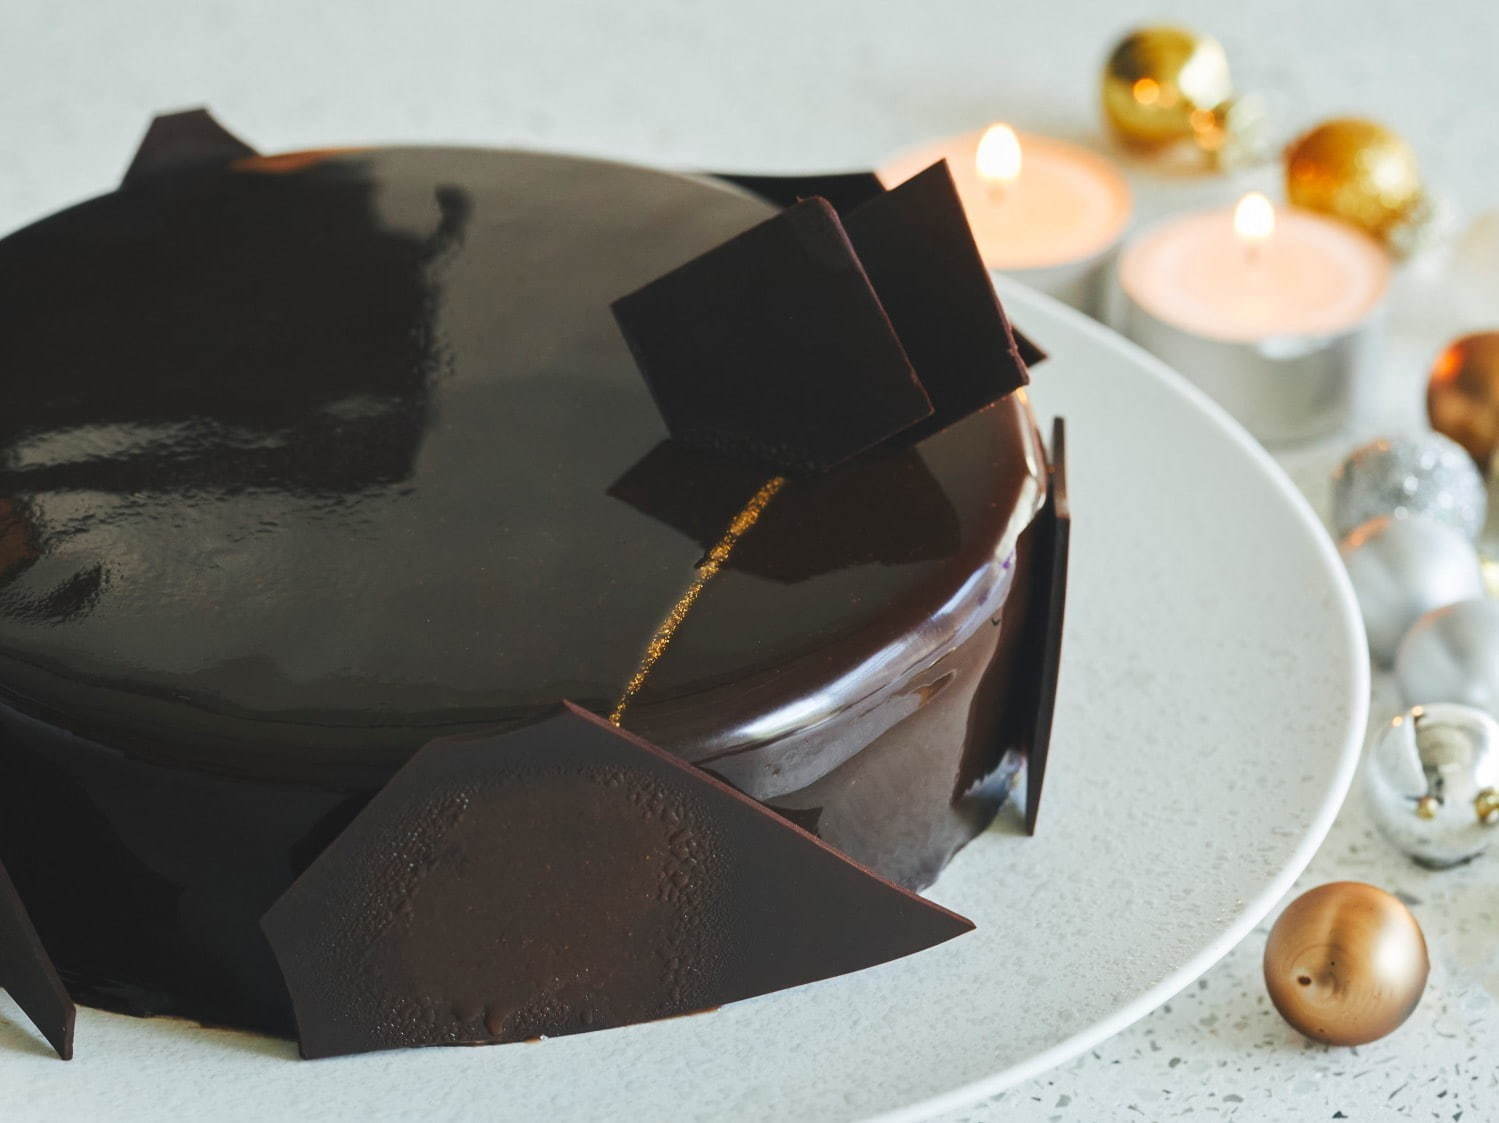 チョコレート専門店のクリスマスケーキ 高級ブランド 有名パティシエの予約必須ケーキ ファッションプレス